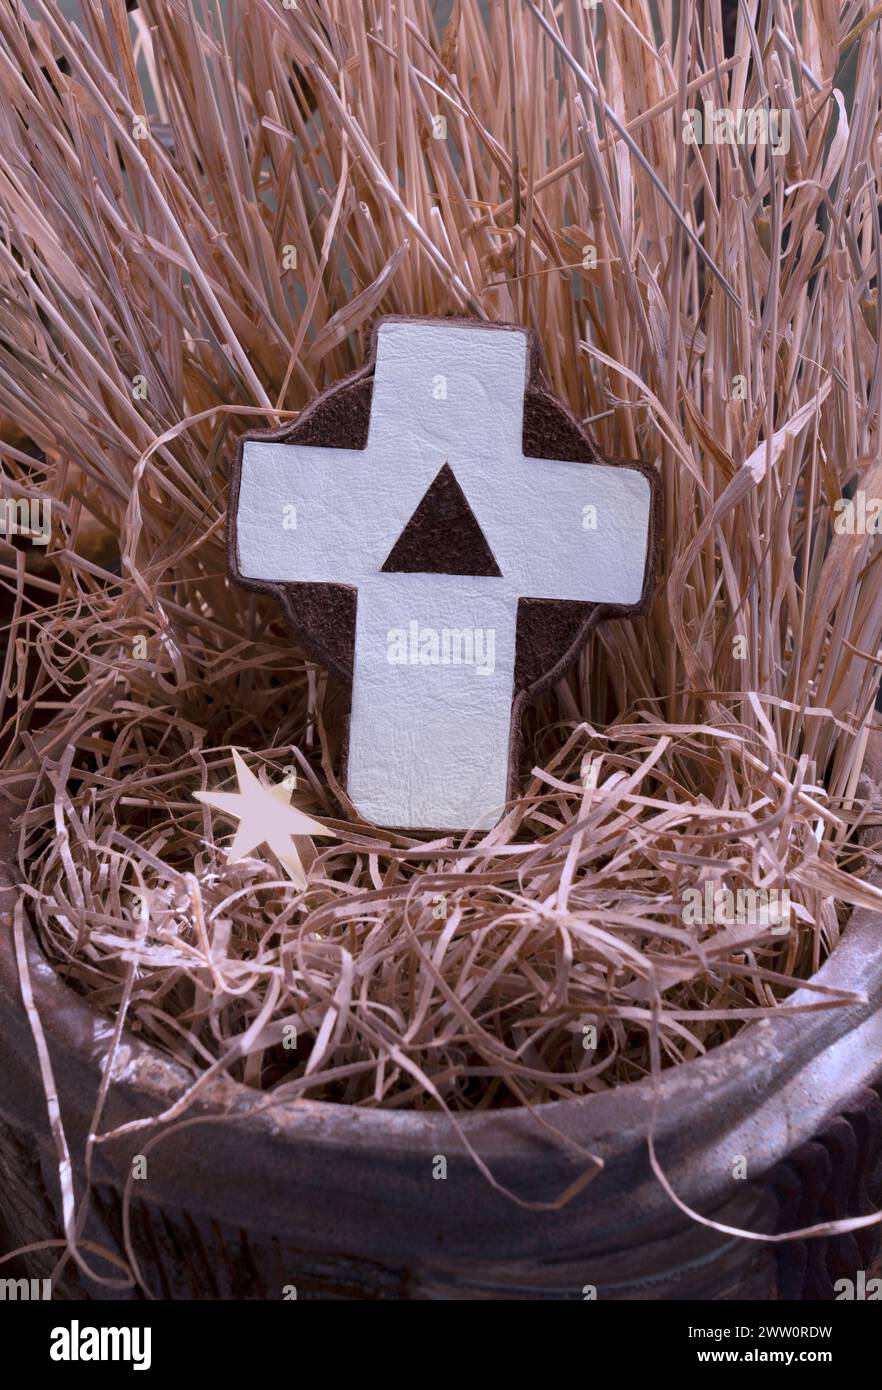 Croix en cuir artisanal avec le symbole de Dieu triune repose dans un lit de paille de crèche pour nous rappeler que l'étoile de Bethléem brille là où Jésus est né. Banque D'Images